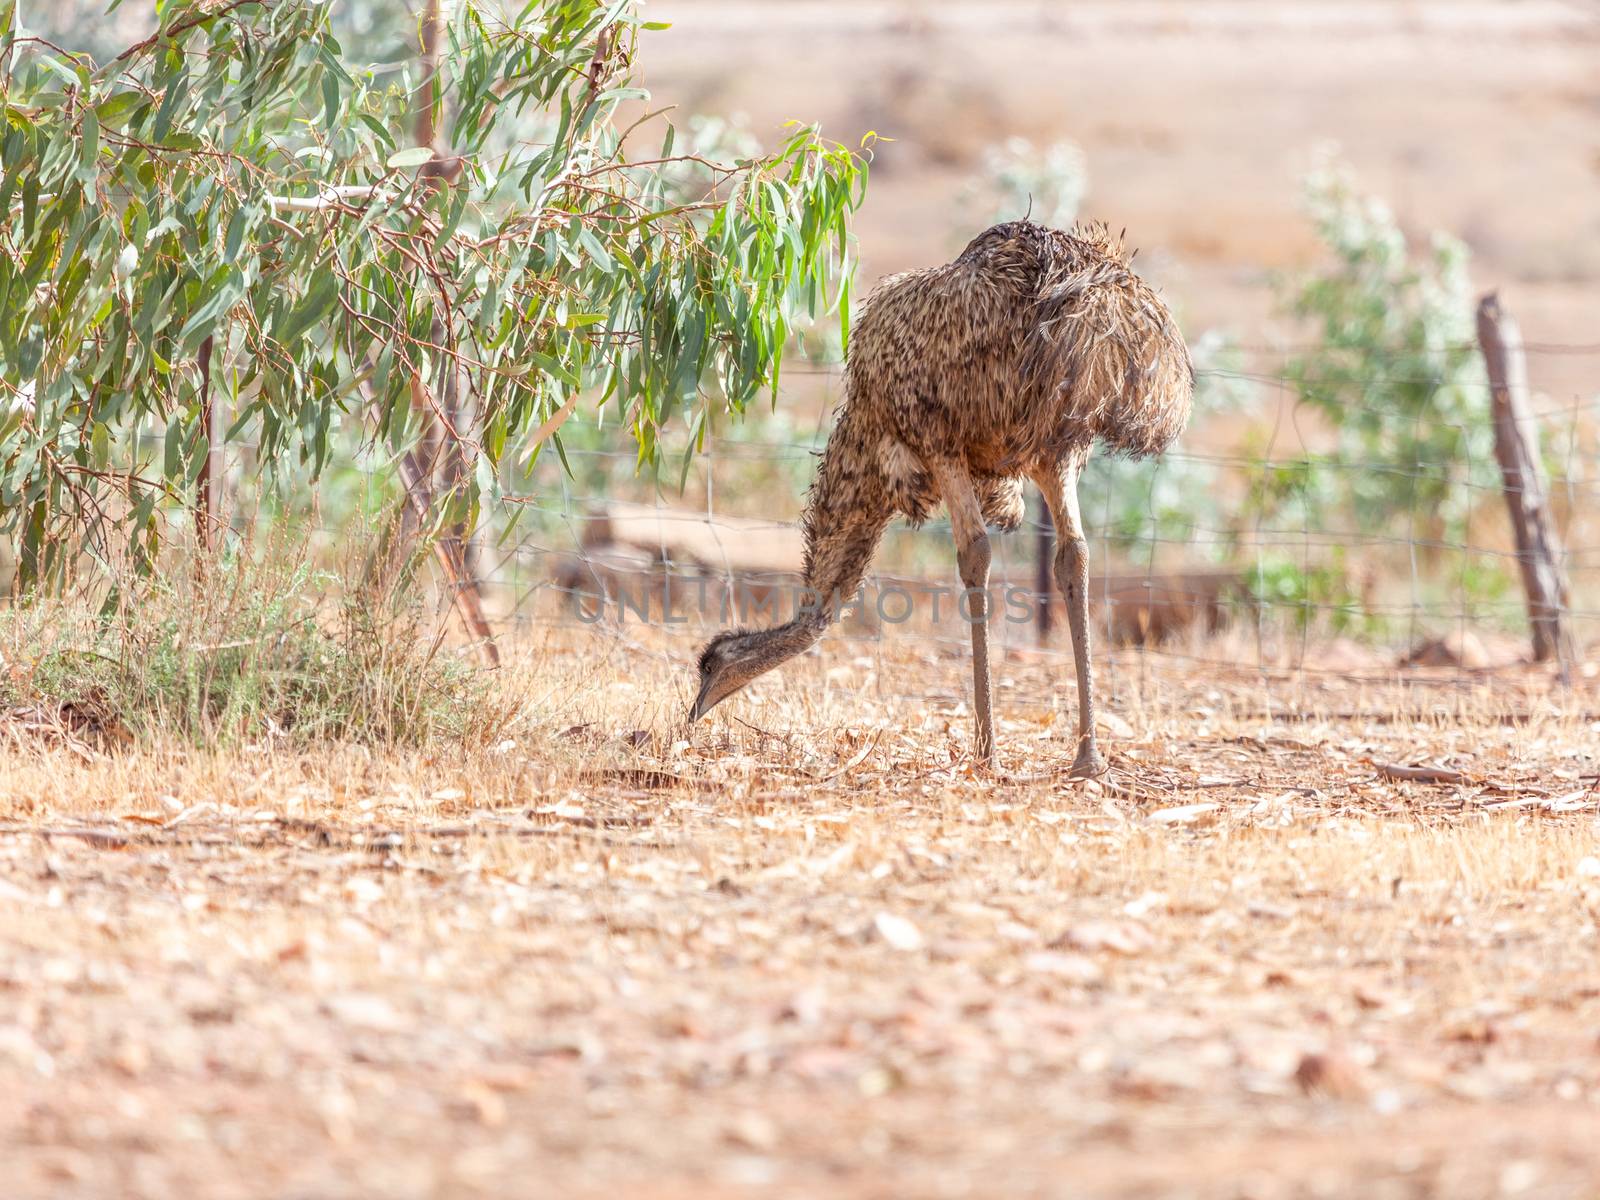 An image of an Emu Bird in Australia